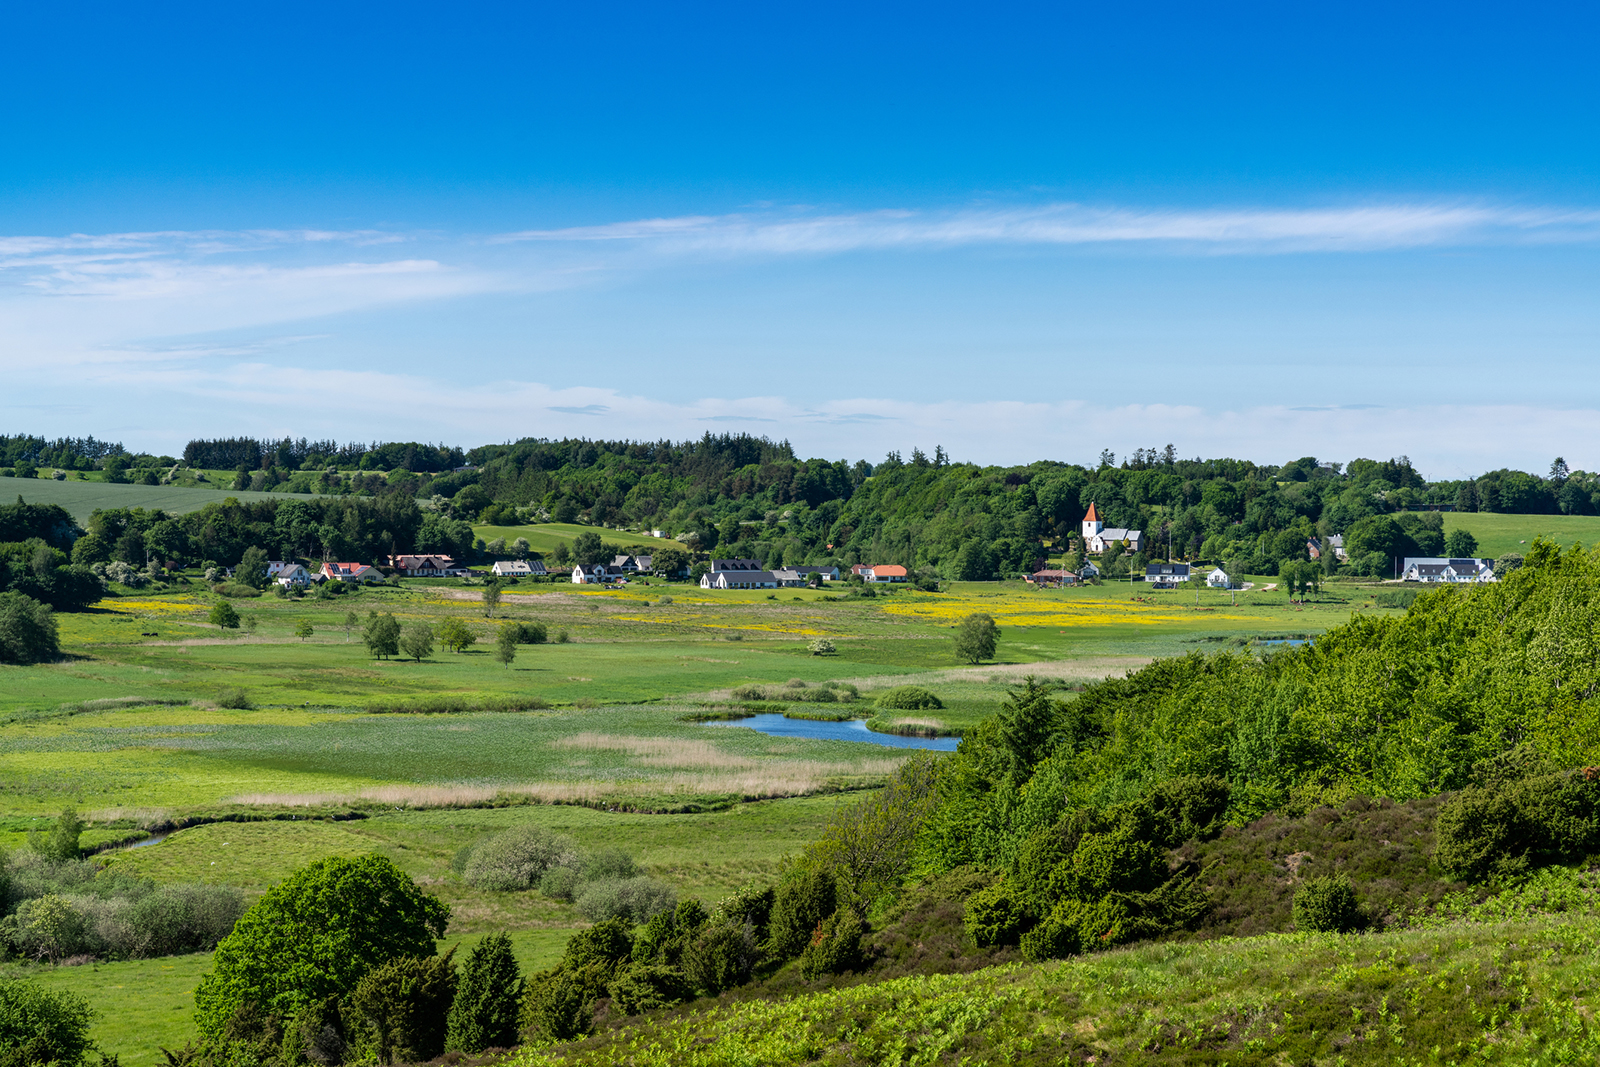 A Gravlev village and river landscape in northern Denmark.